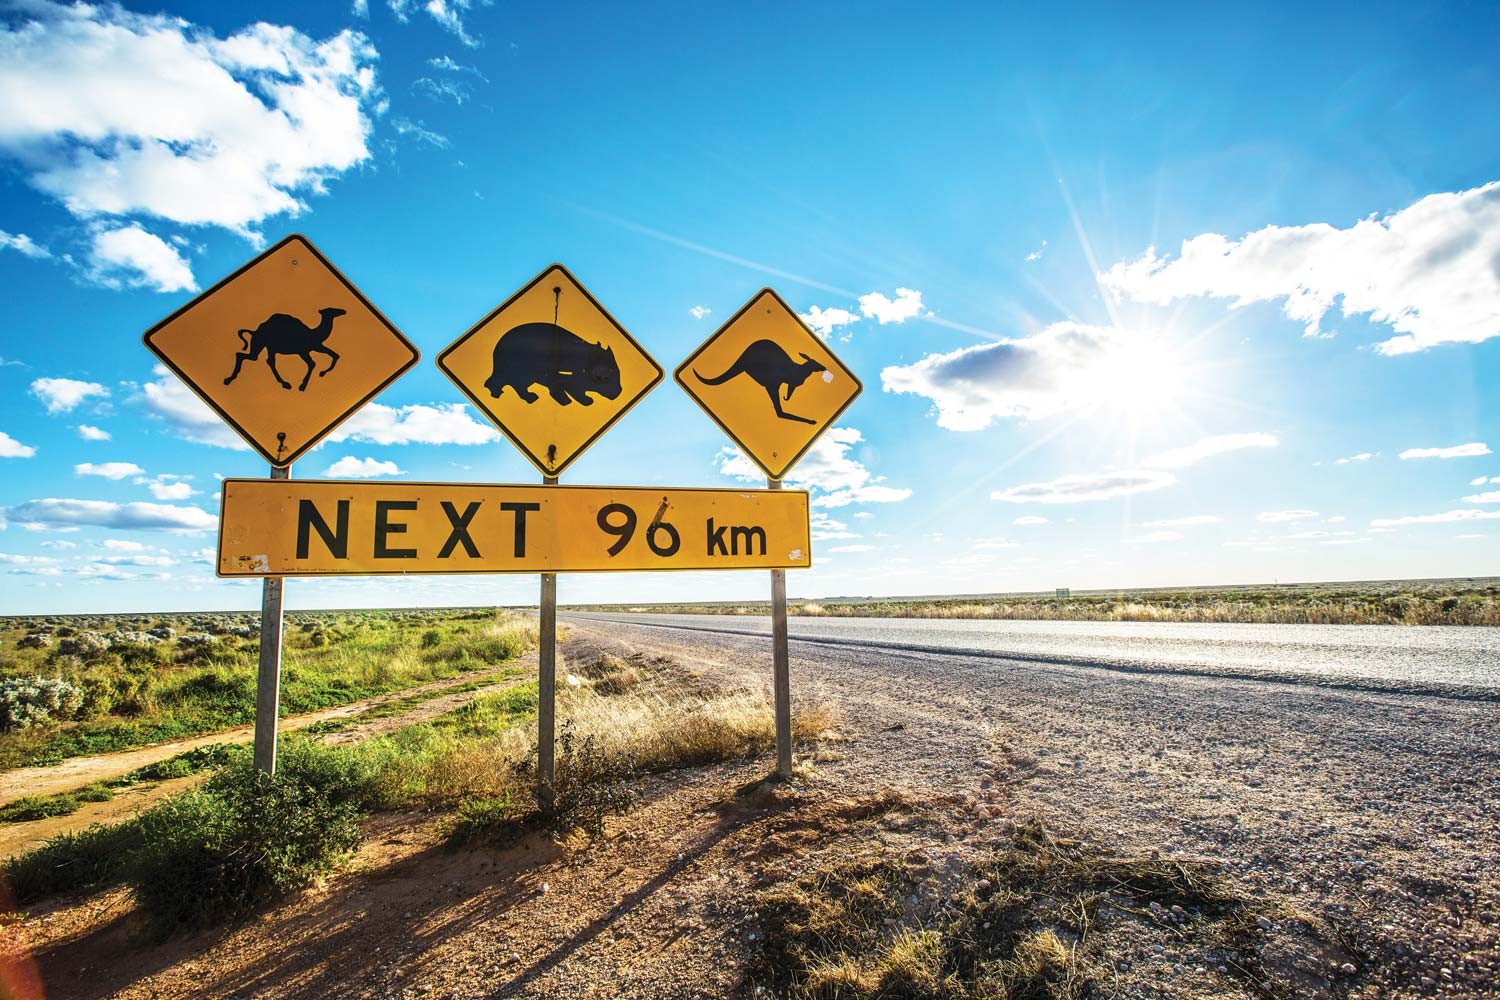 澳洲公路之旅和自驾游